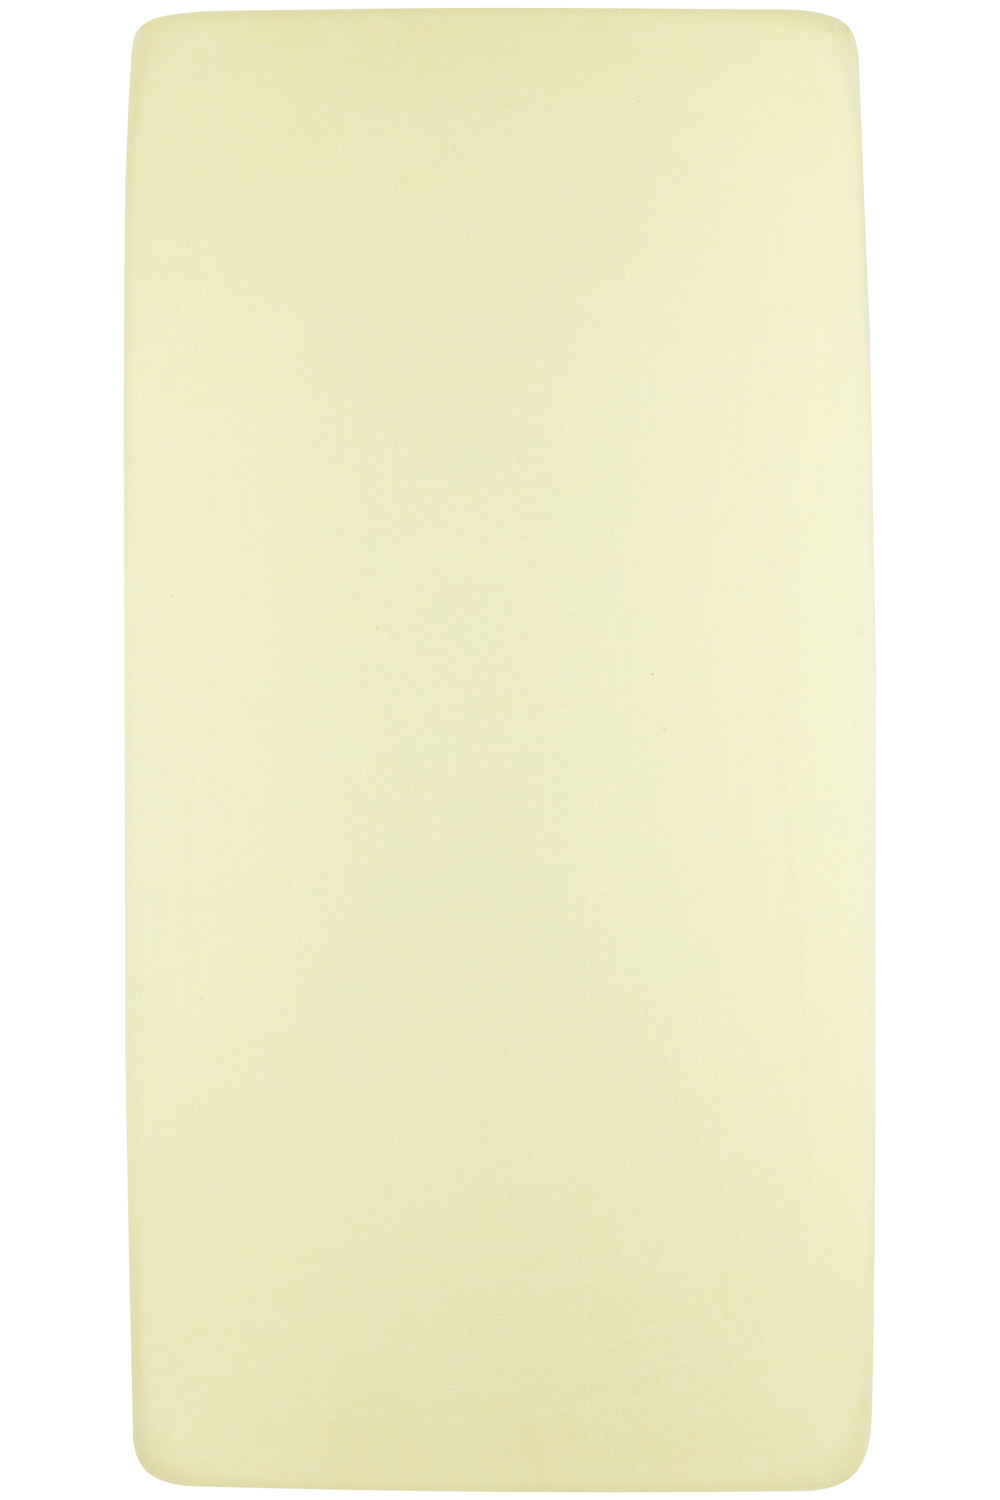 Spannbettlaken Laufgittermatratze Uni - soft yellow - 75x95cm